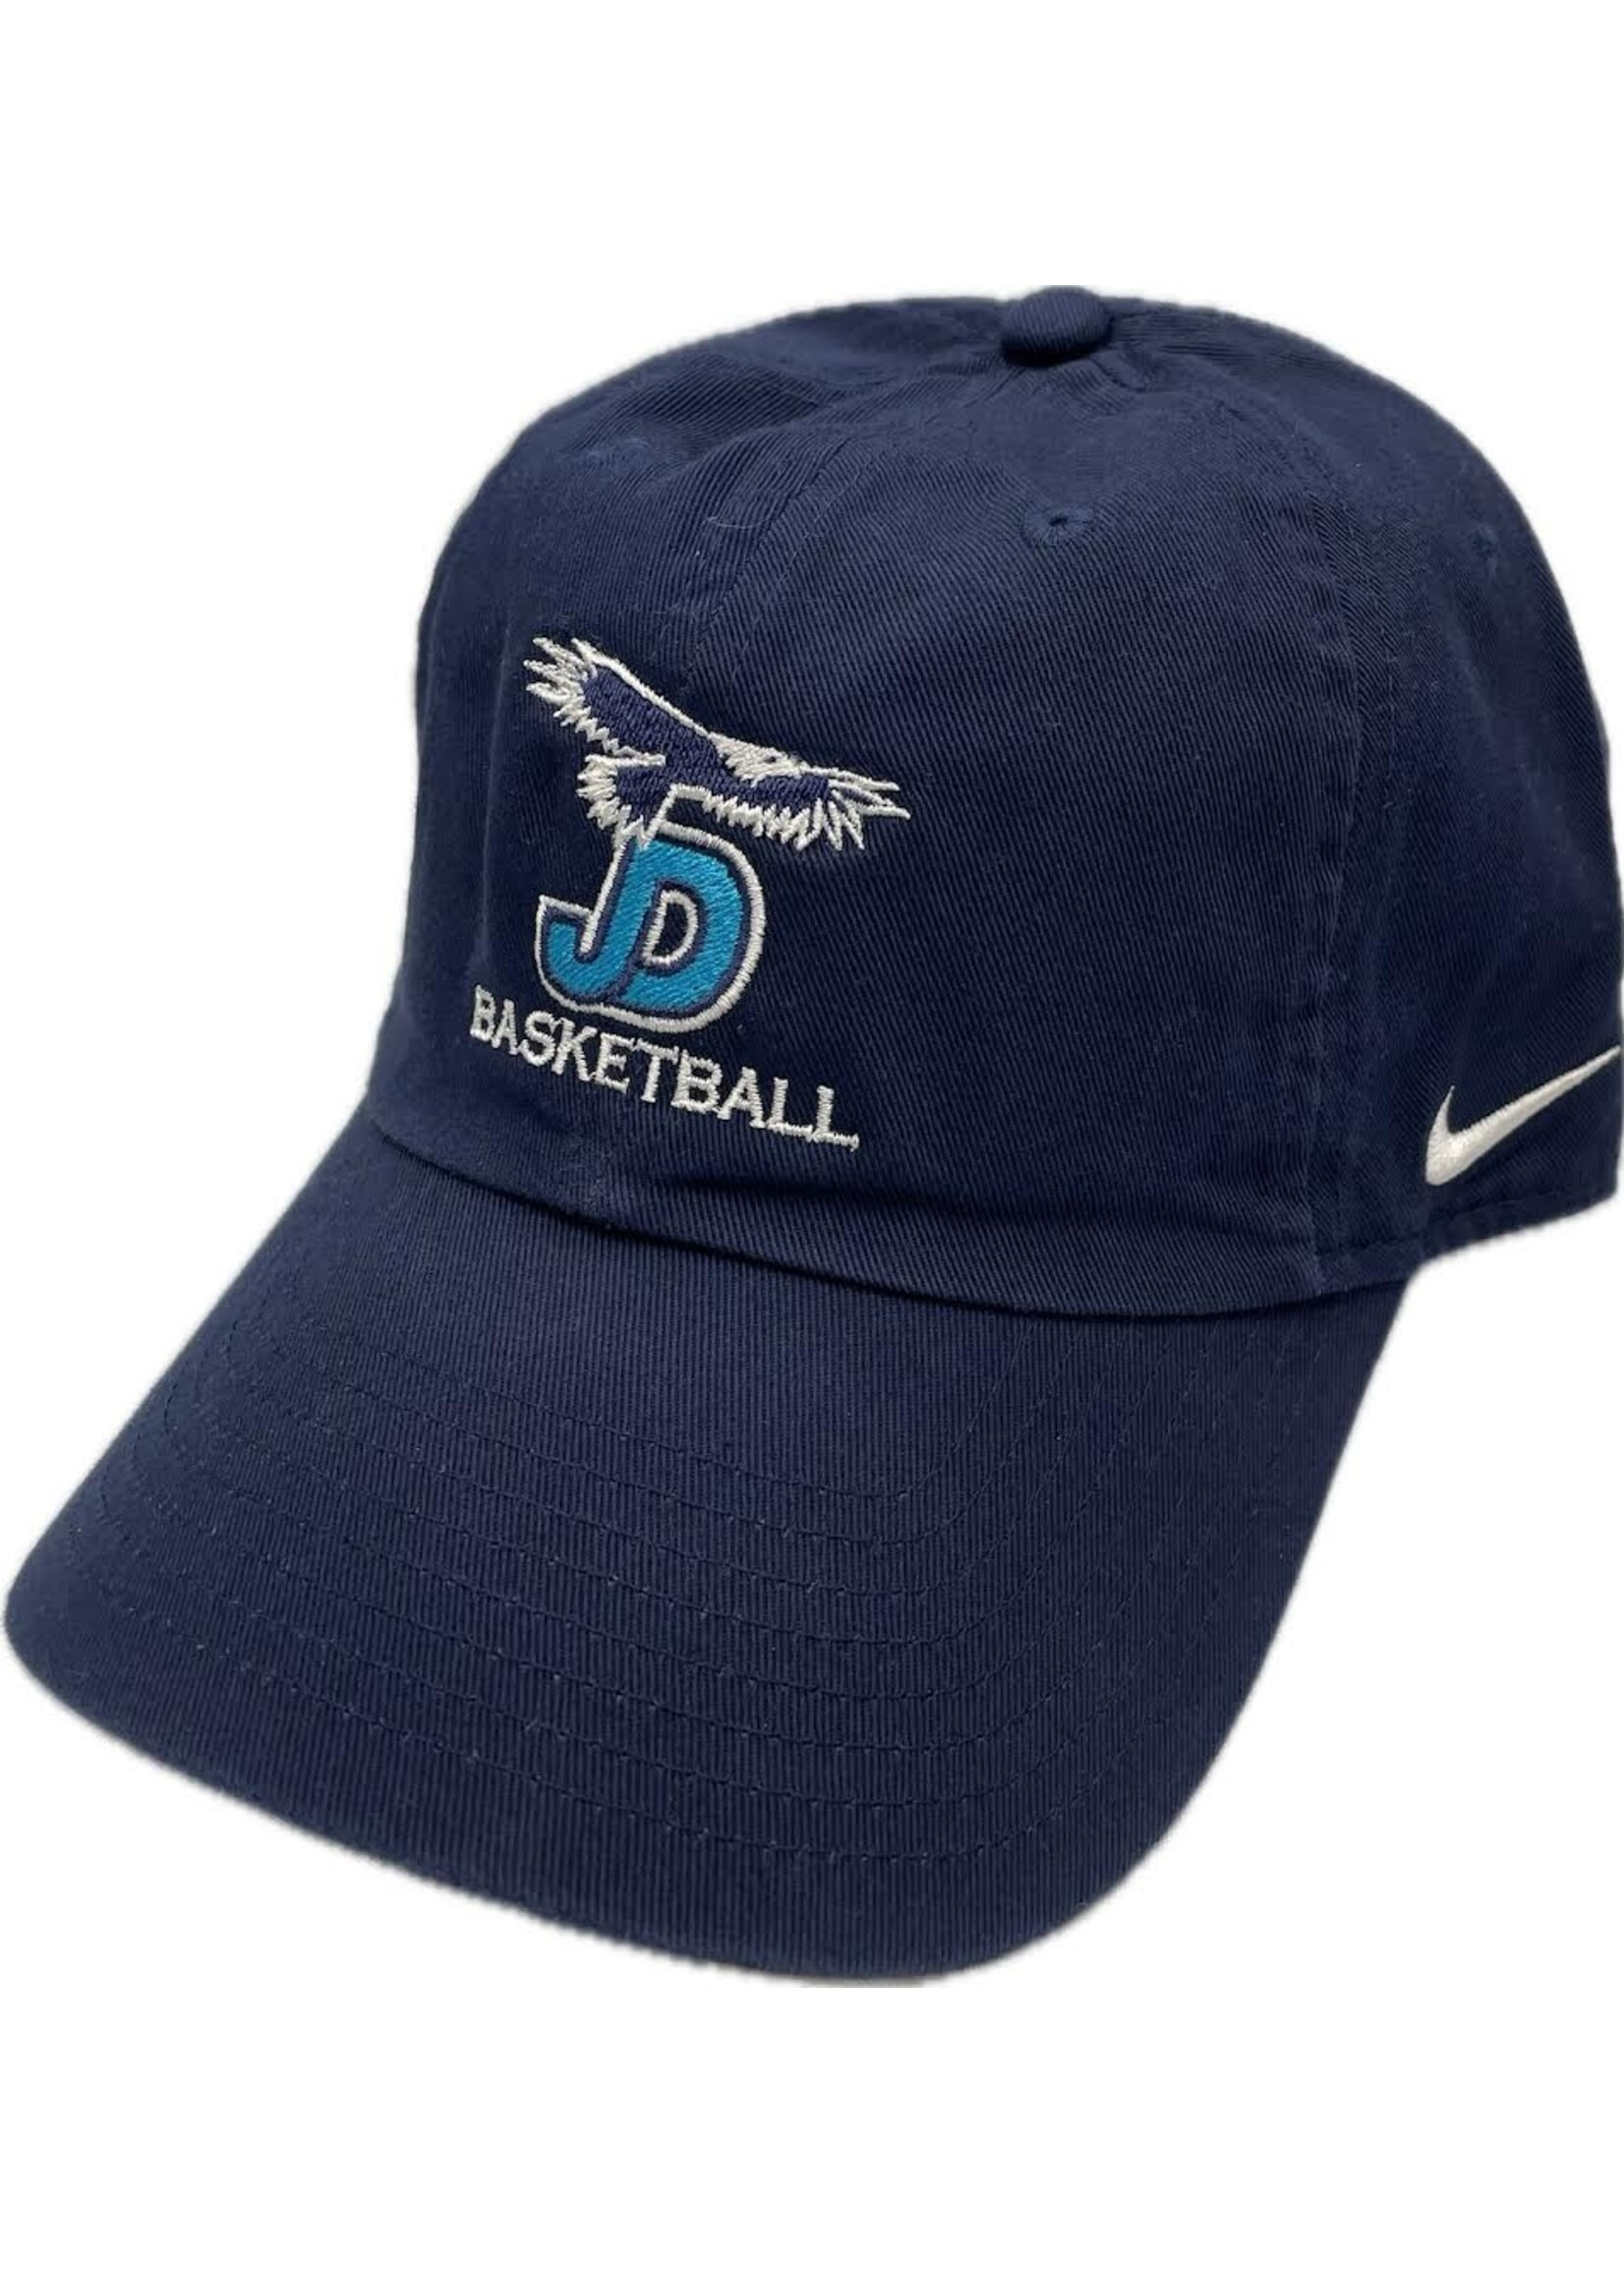 NON-UNIFORM Hat - Custom Nike Basketball Campus Cap - Men’s/Unisex